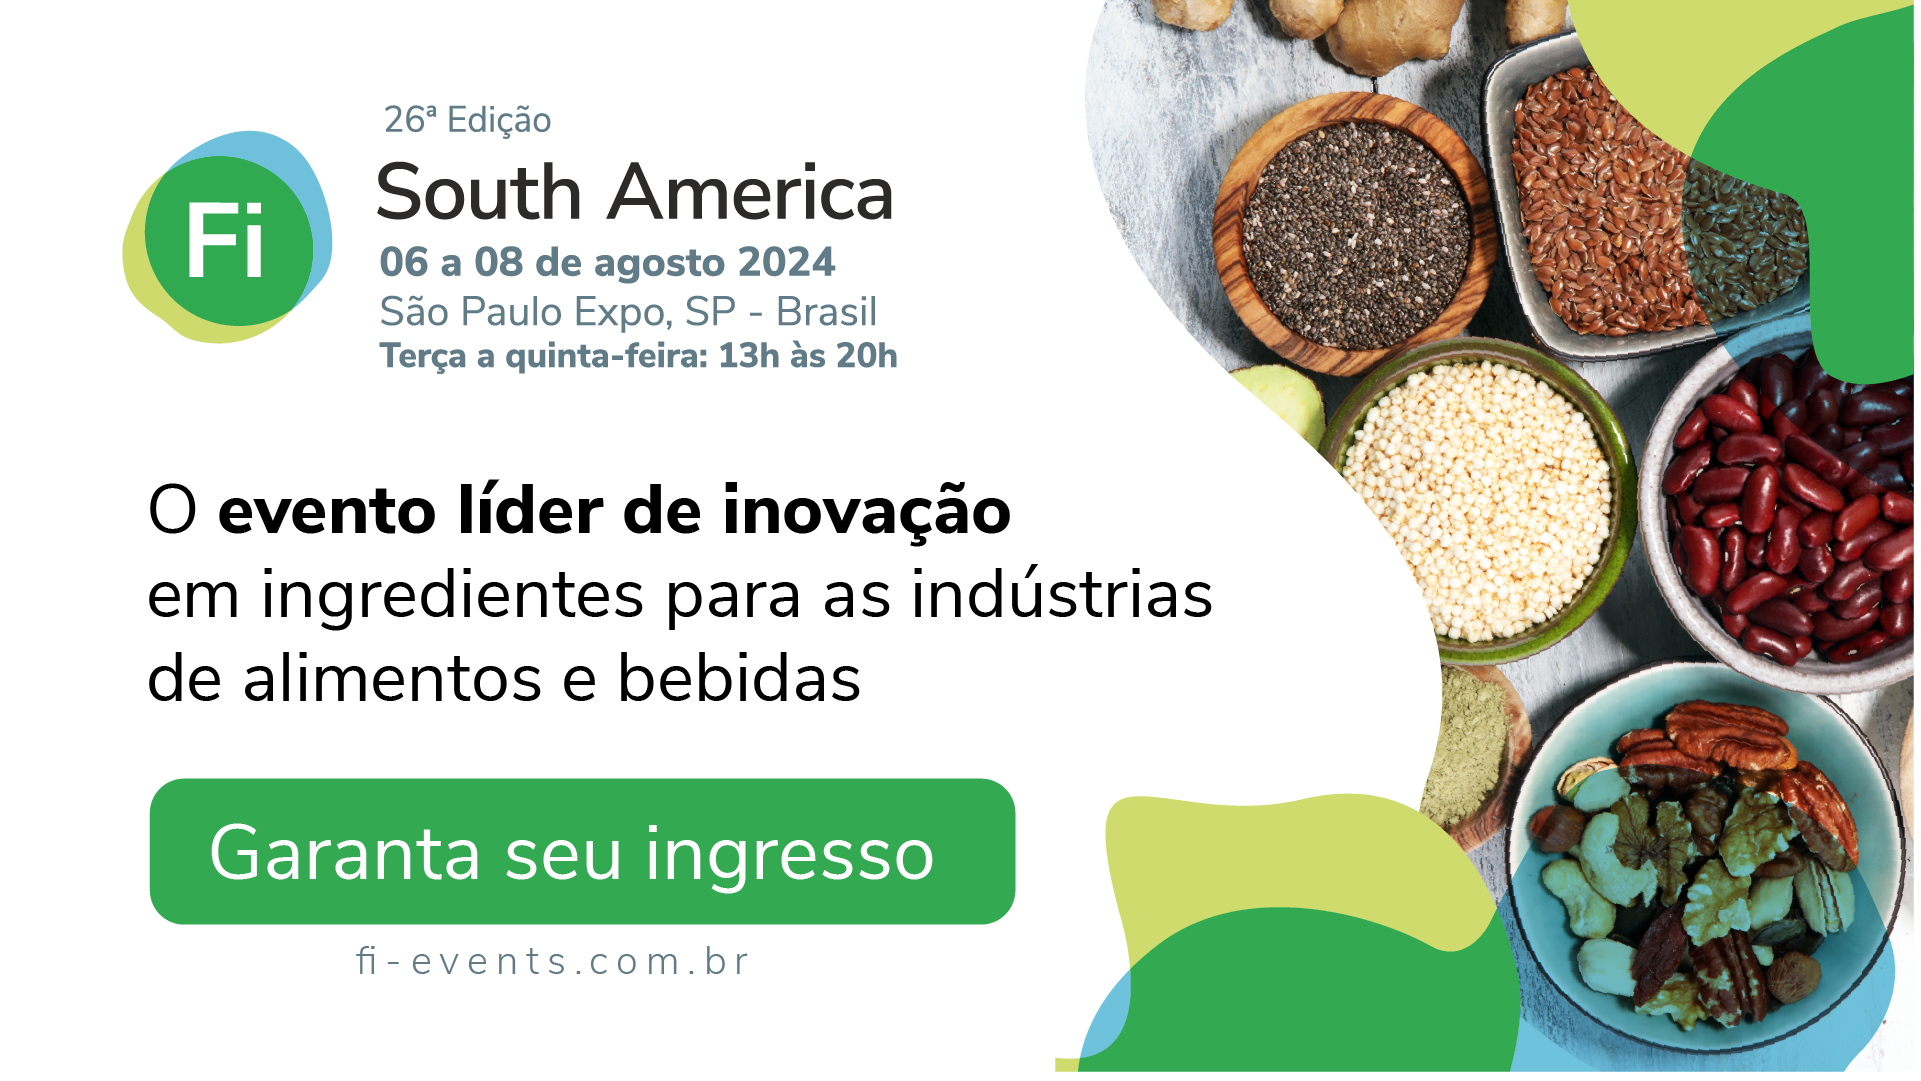 Food Ingredients South America 2024. - Abiad 